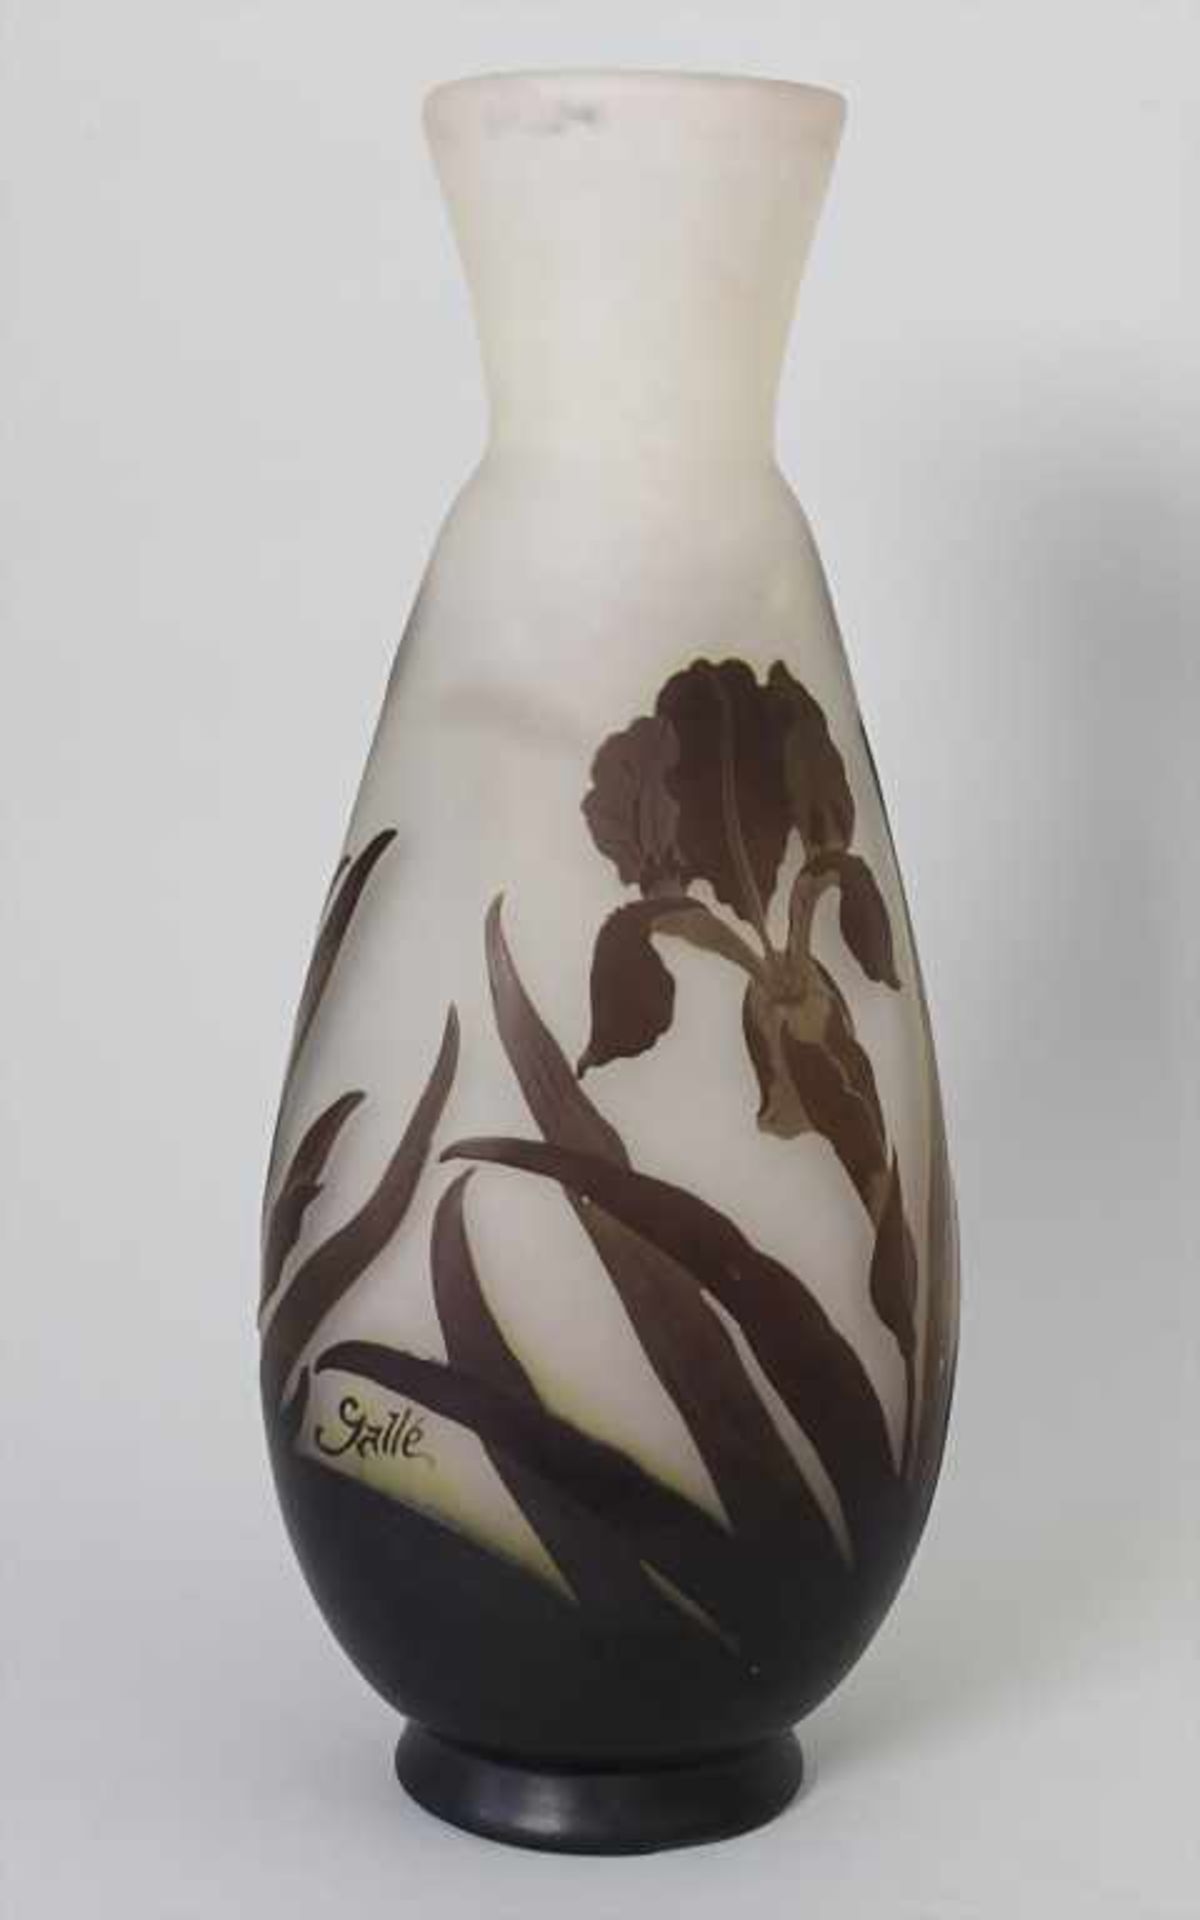 Große Jugendstil Vase mit Iris / An Art Nouveau large vase with iris, Emile Gallé, Ecole de Nancy, - Image 3 of 10